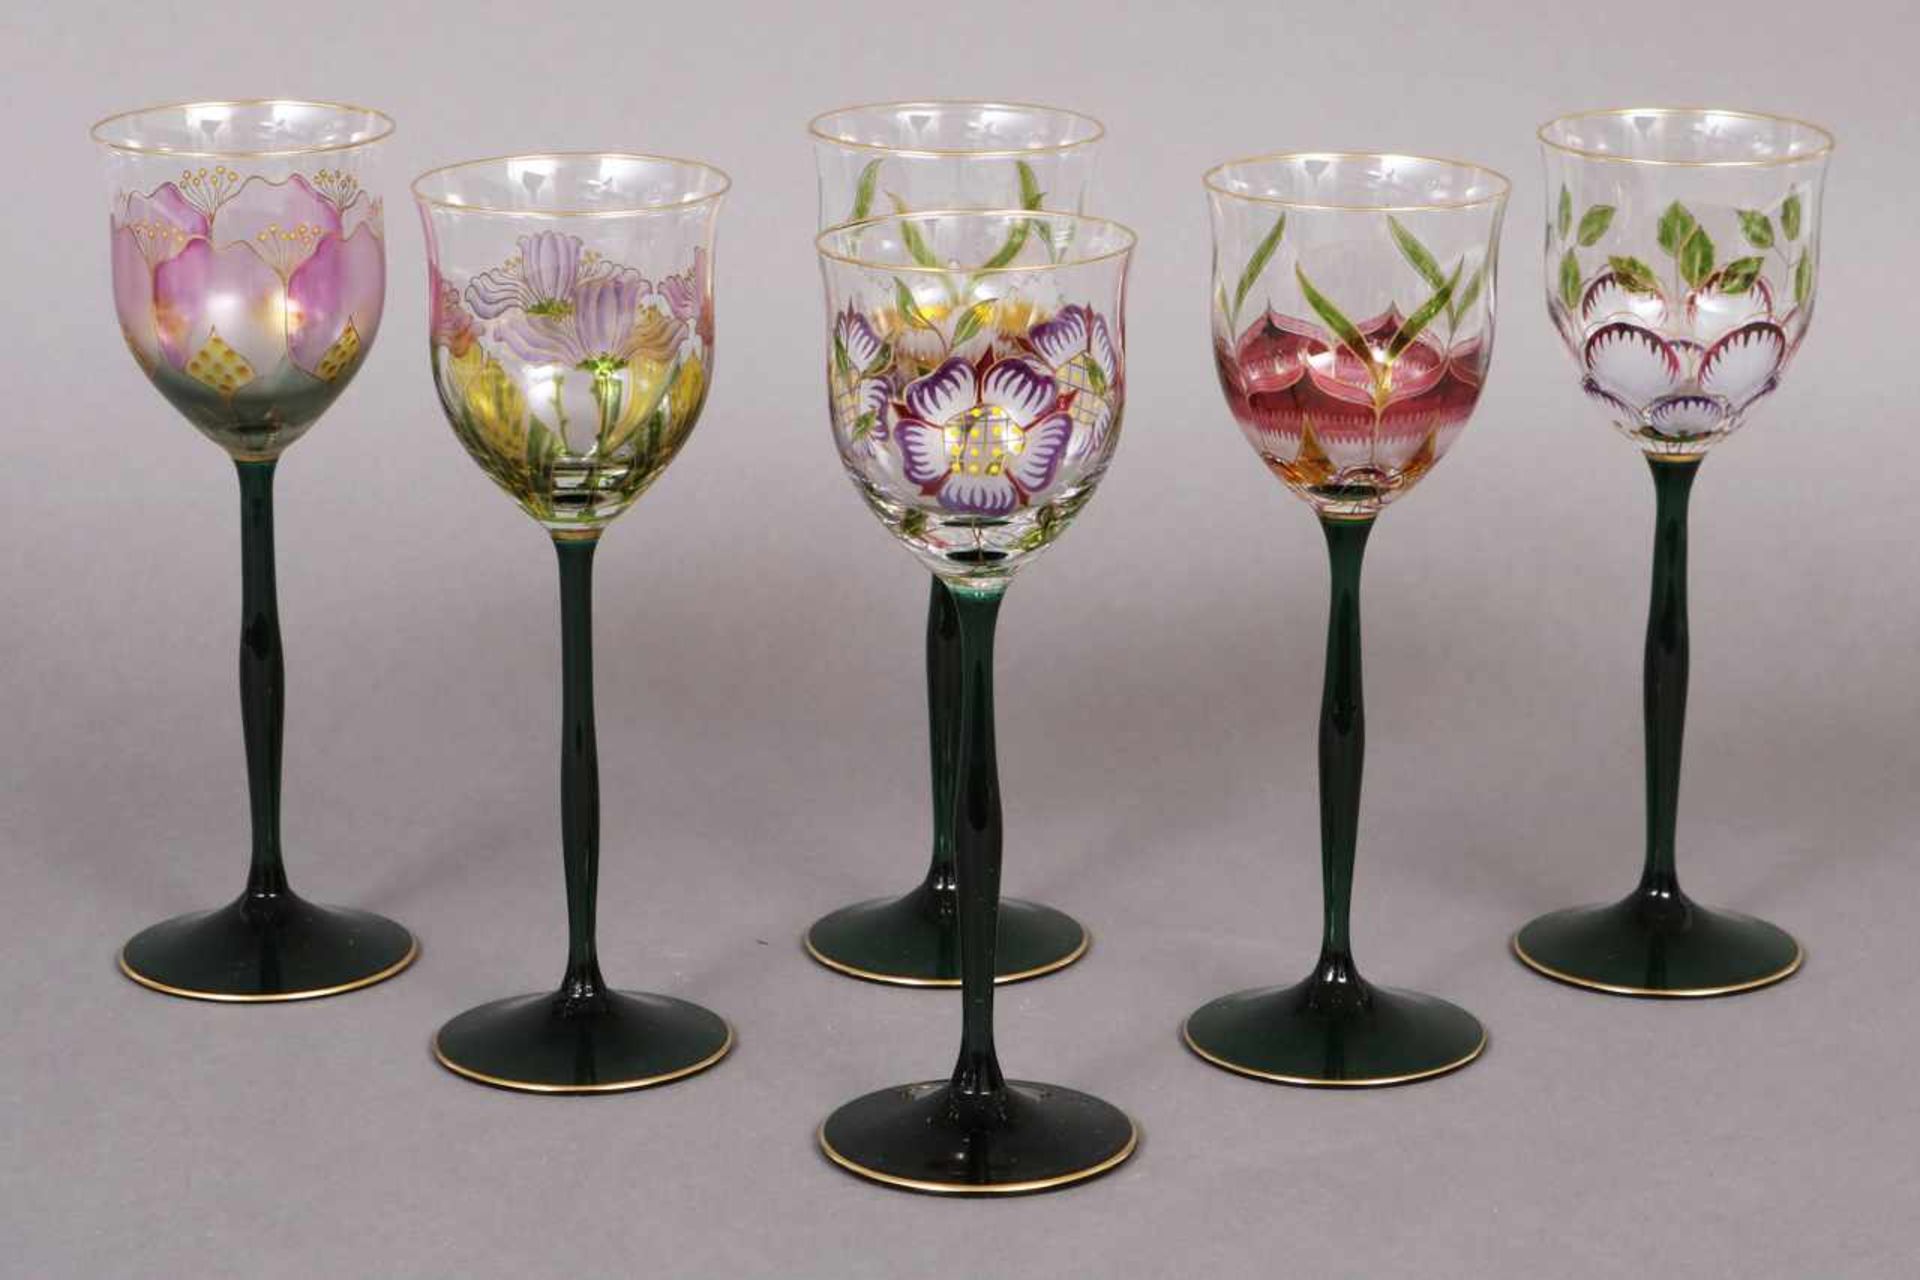 6 NACHTMANN Weingläser im Stile des Jugendstil, trichterförmige Kuppa mit Floraldekor auf